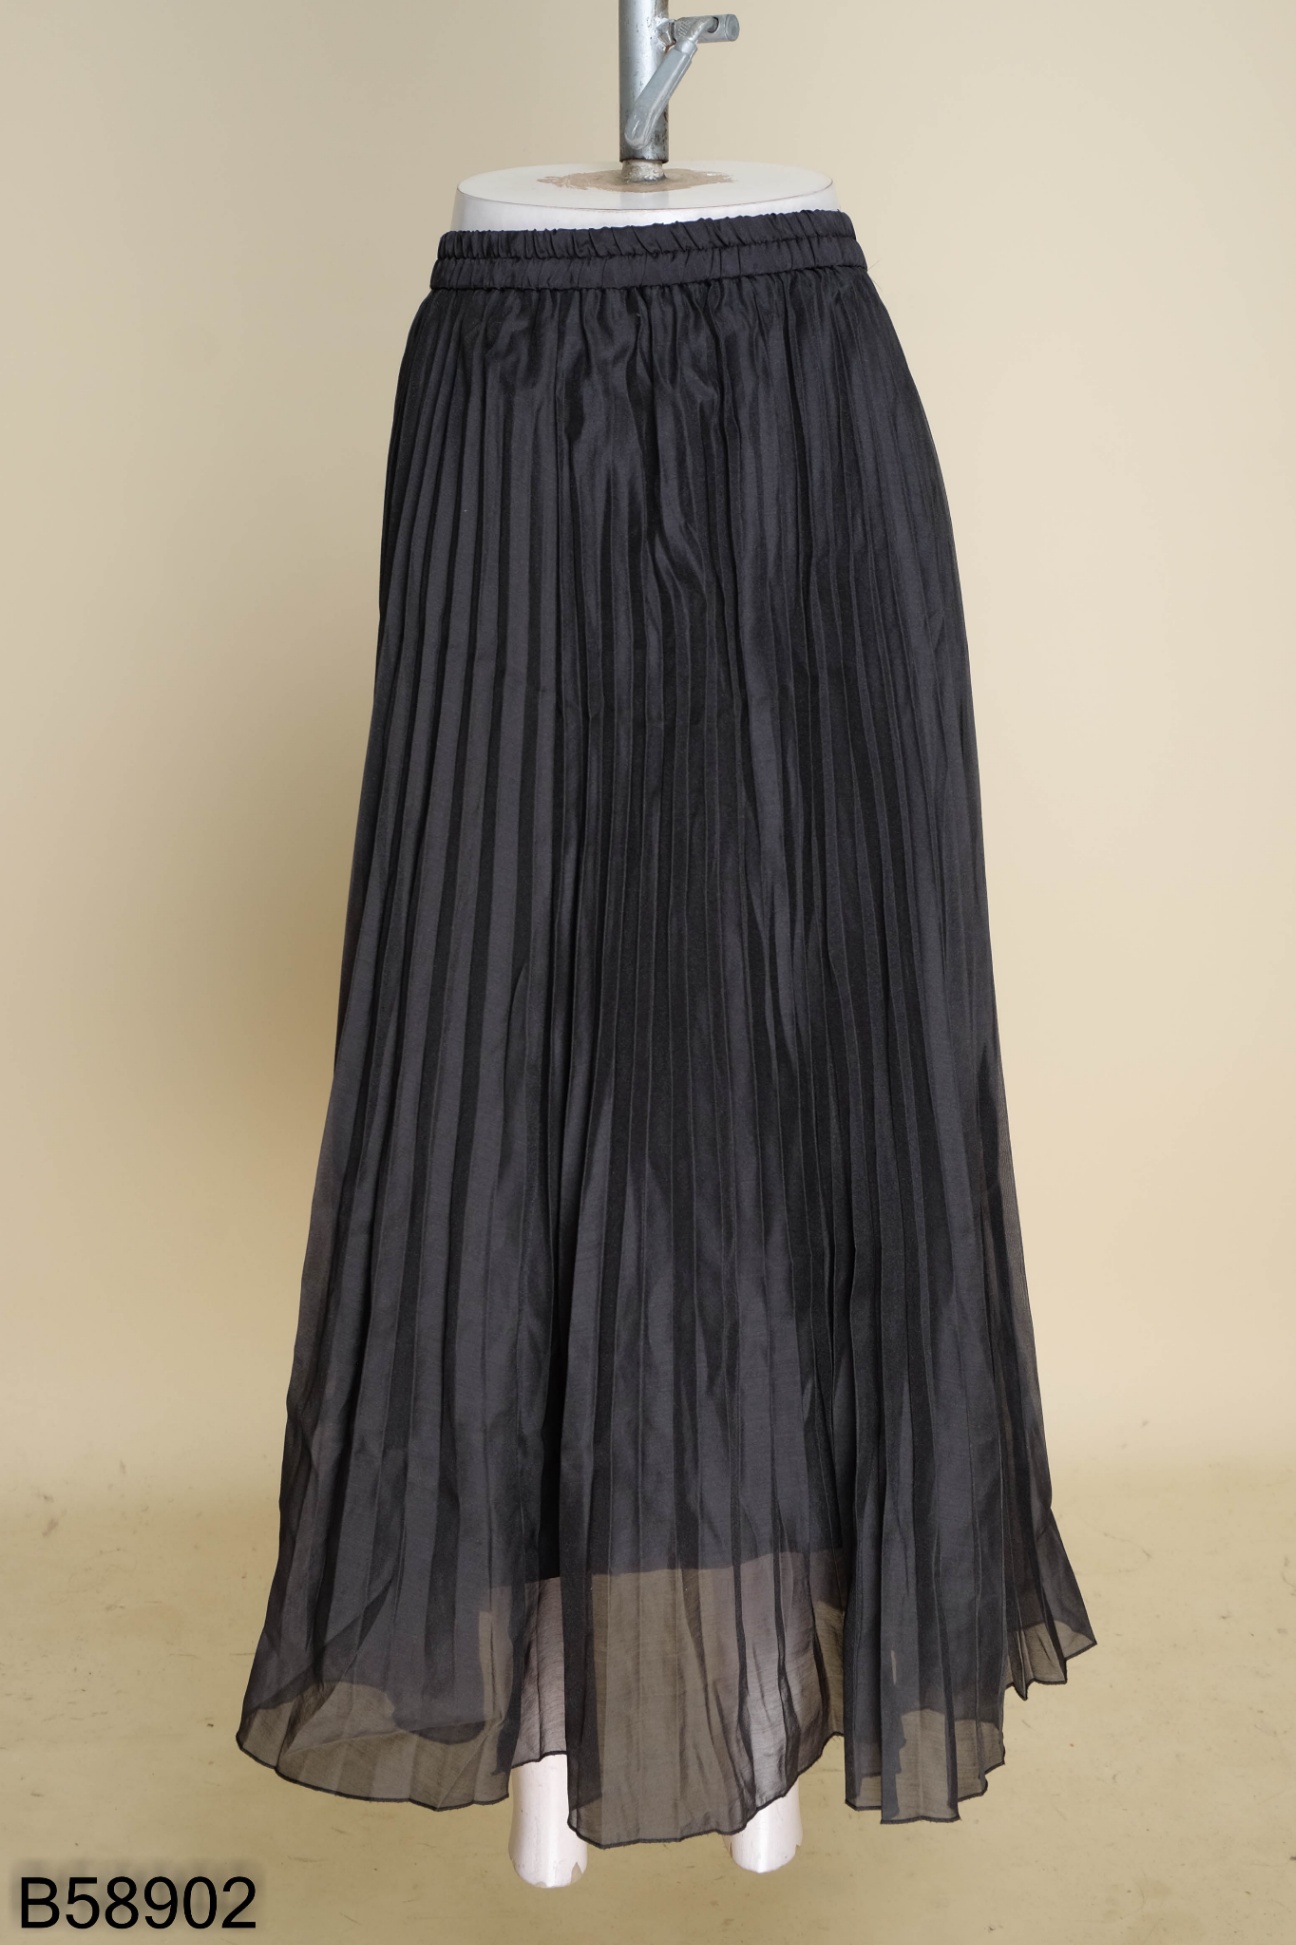 Quần áo người lớn: Chân váy nữ dáng dài qua gối phối bèo rất xinh hàng VNXK  màu đen